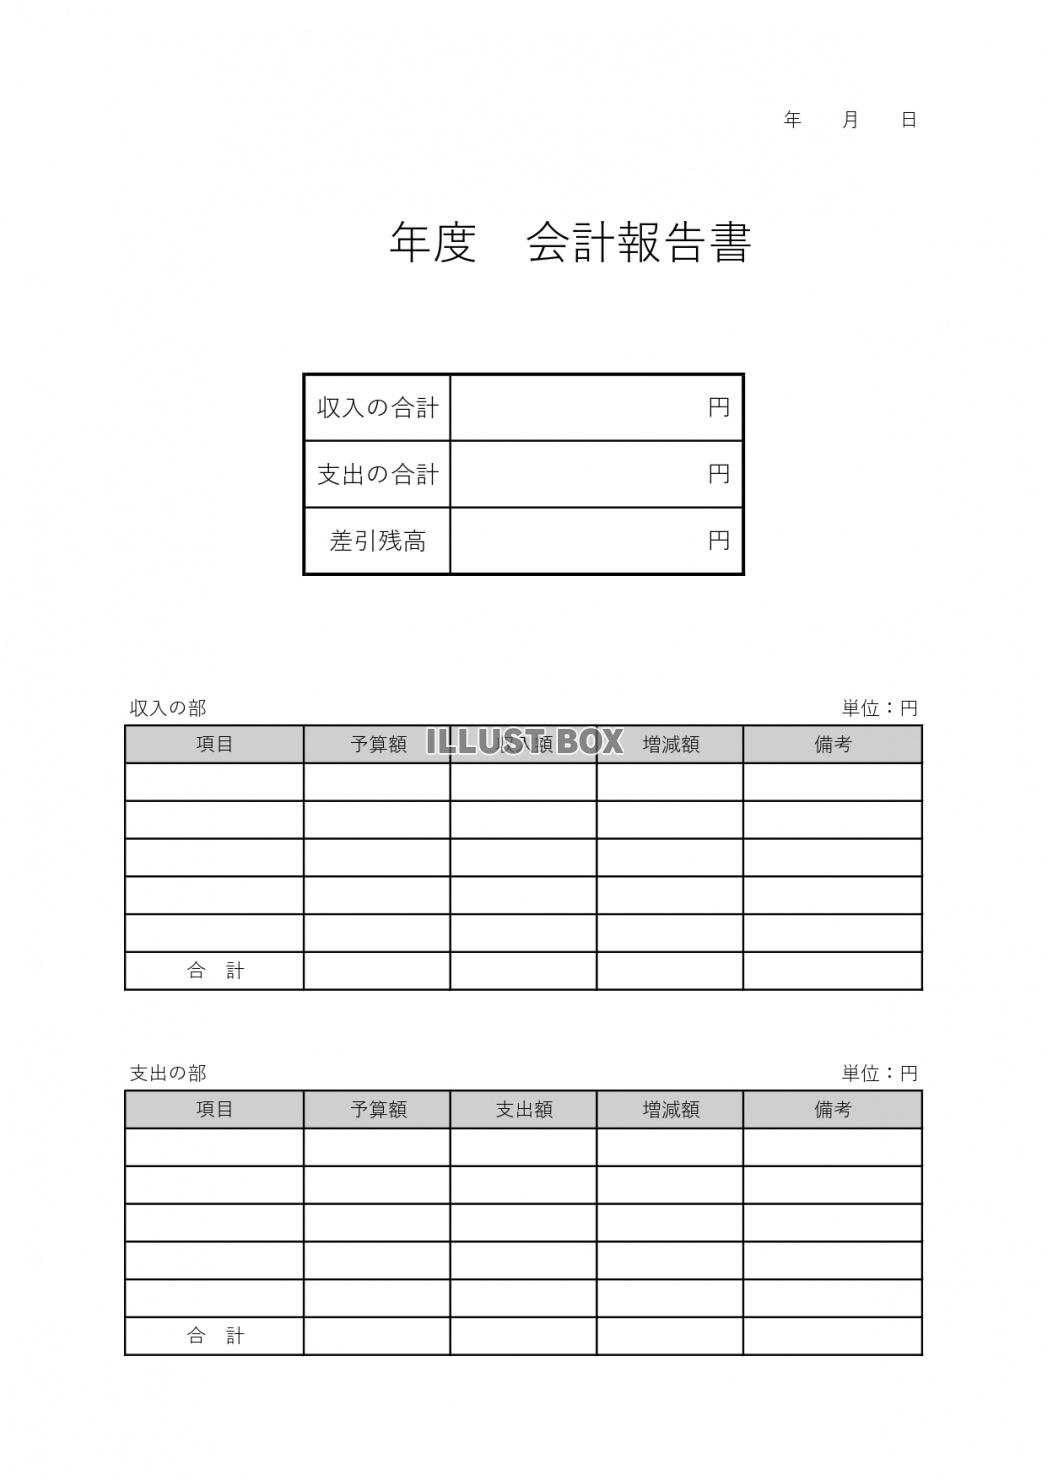 無料イラスト 縦の書式の表形式 エクセル ワード 会計報告書のテンプレート